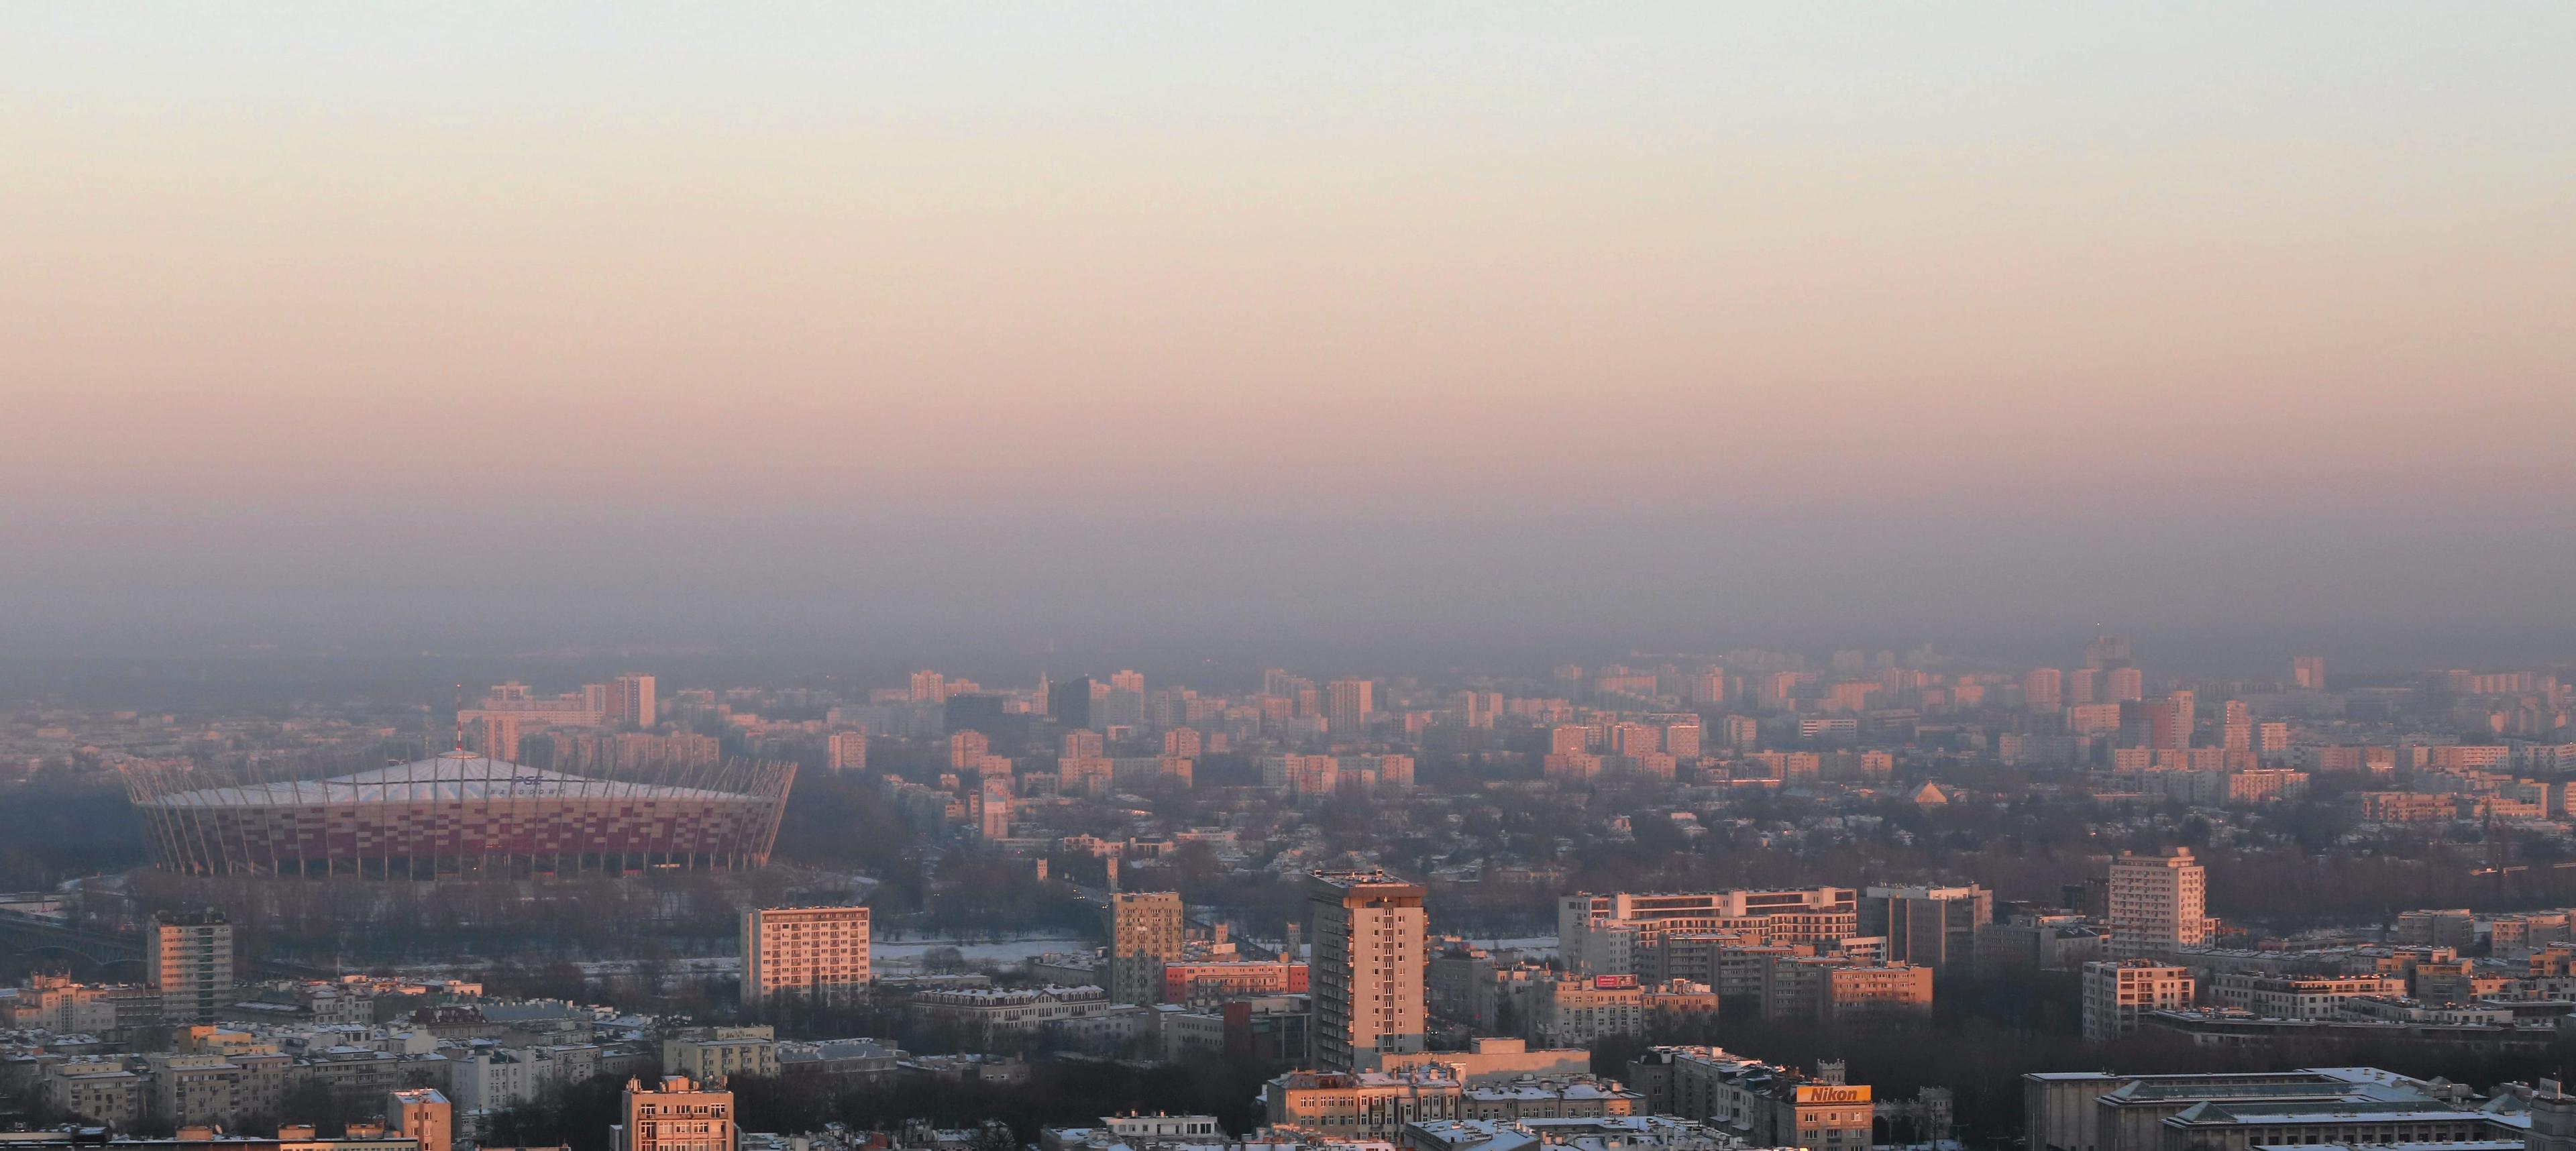 08.01.2017 Warszawa ,  smog nad miastem .
Fot . Slawomir Kaminski / Agencja Gazeta